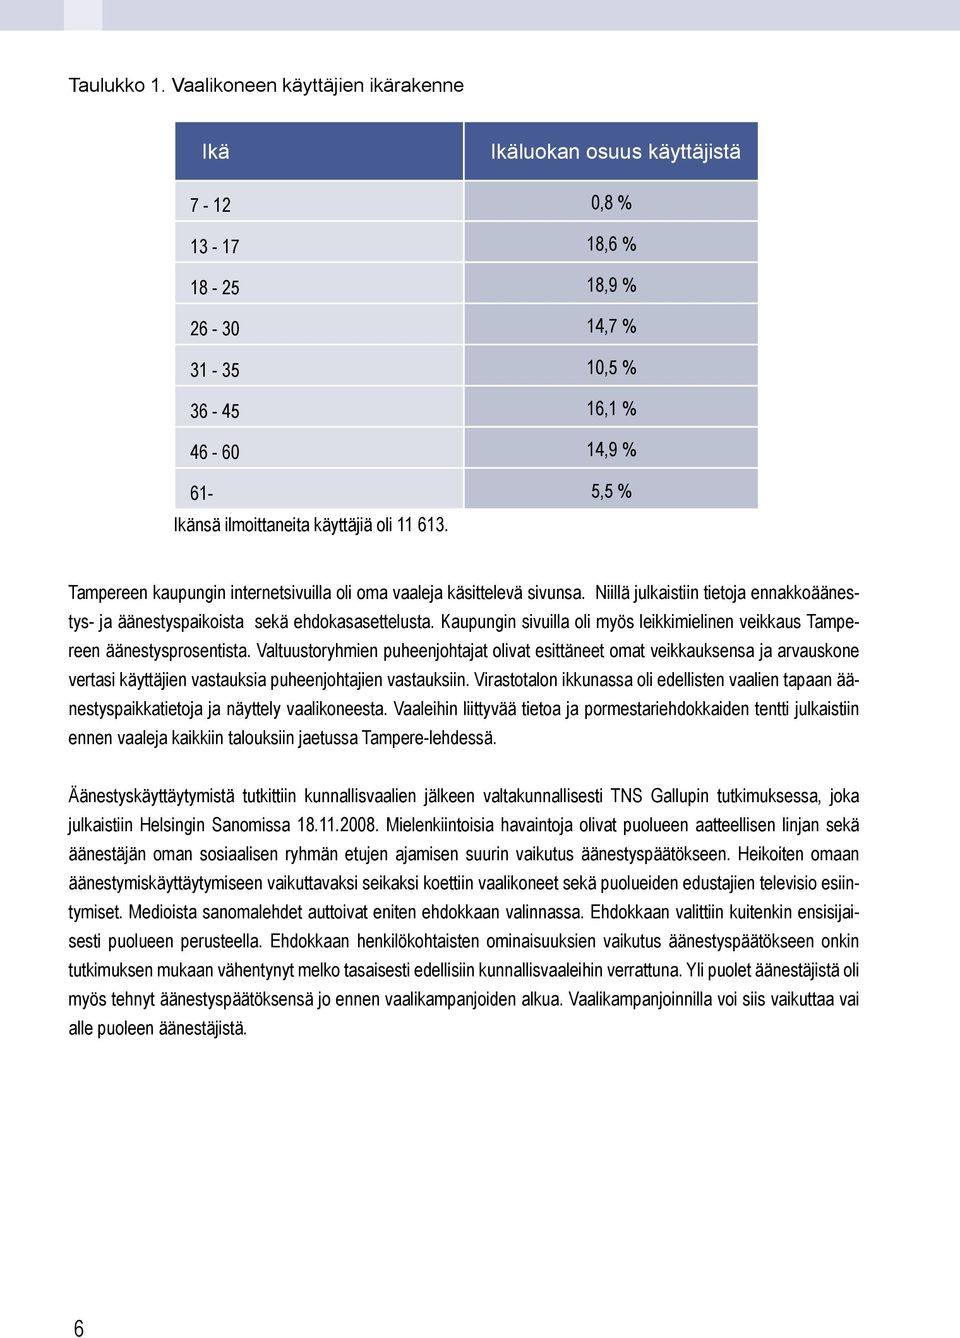 11 613. Tampereen kaupungin internetsivuilla oli oma vaaleja käsittelevä sivunsa. Niillä julkaistiin tietoja ennakkoäänestys- ja äänestyspaikoista sekä ehdokasasettelusta.